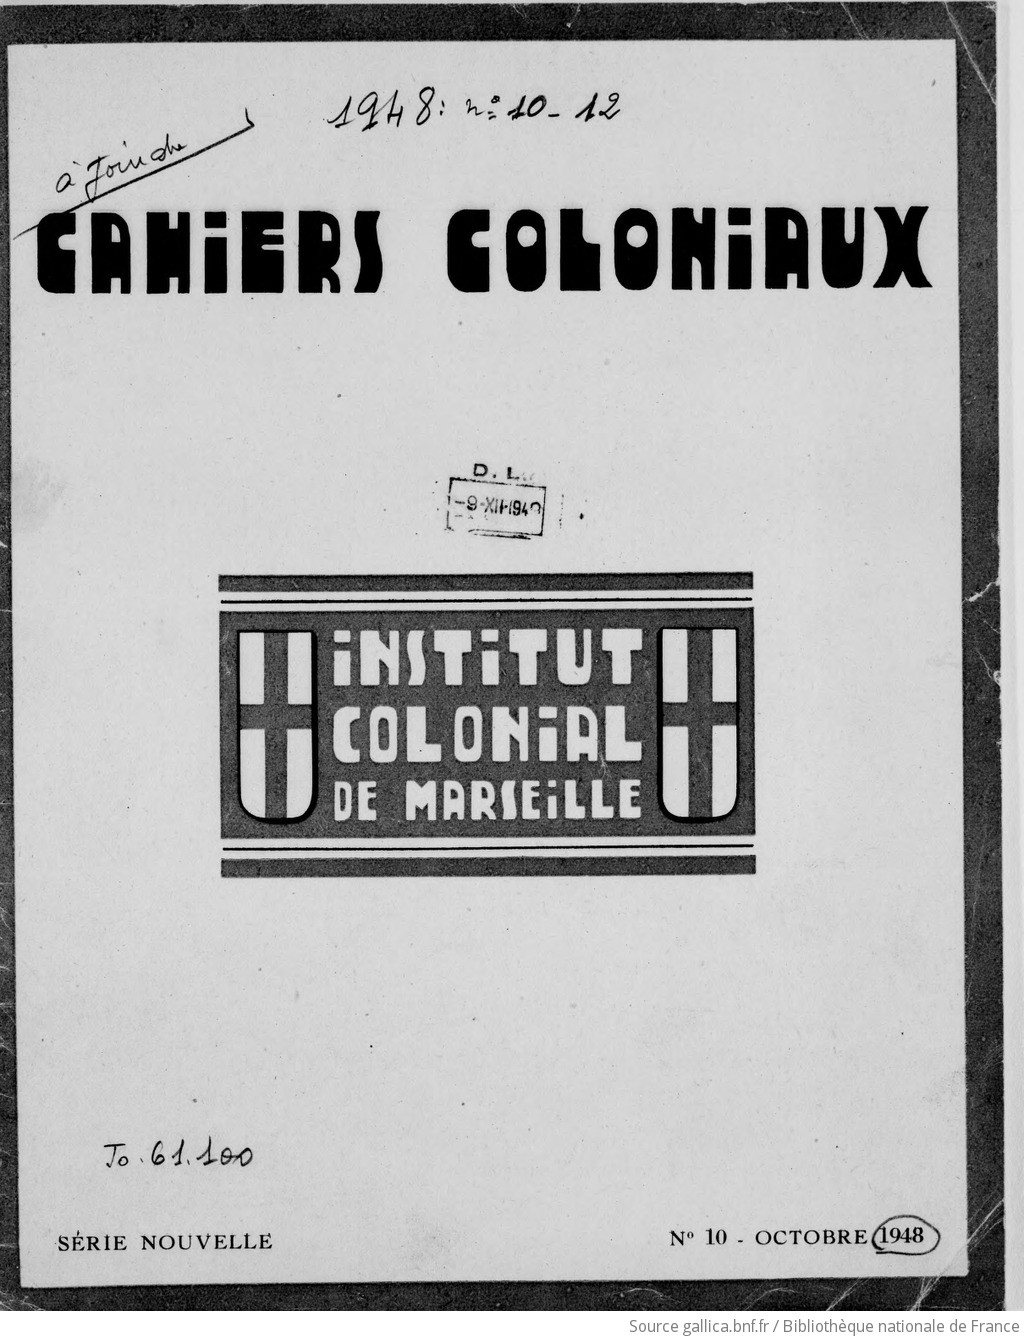 Les Cahiers coloniaux